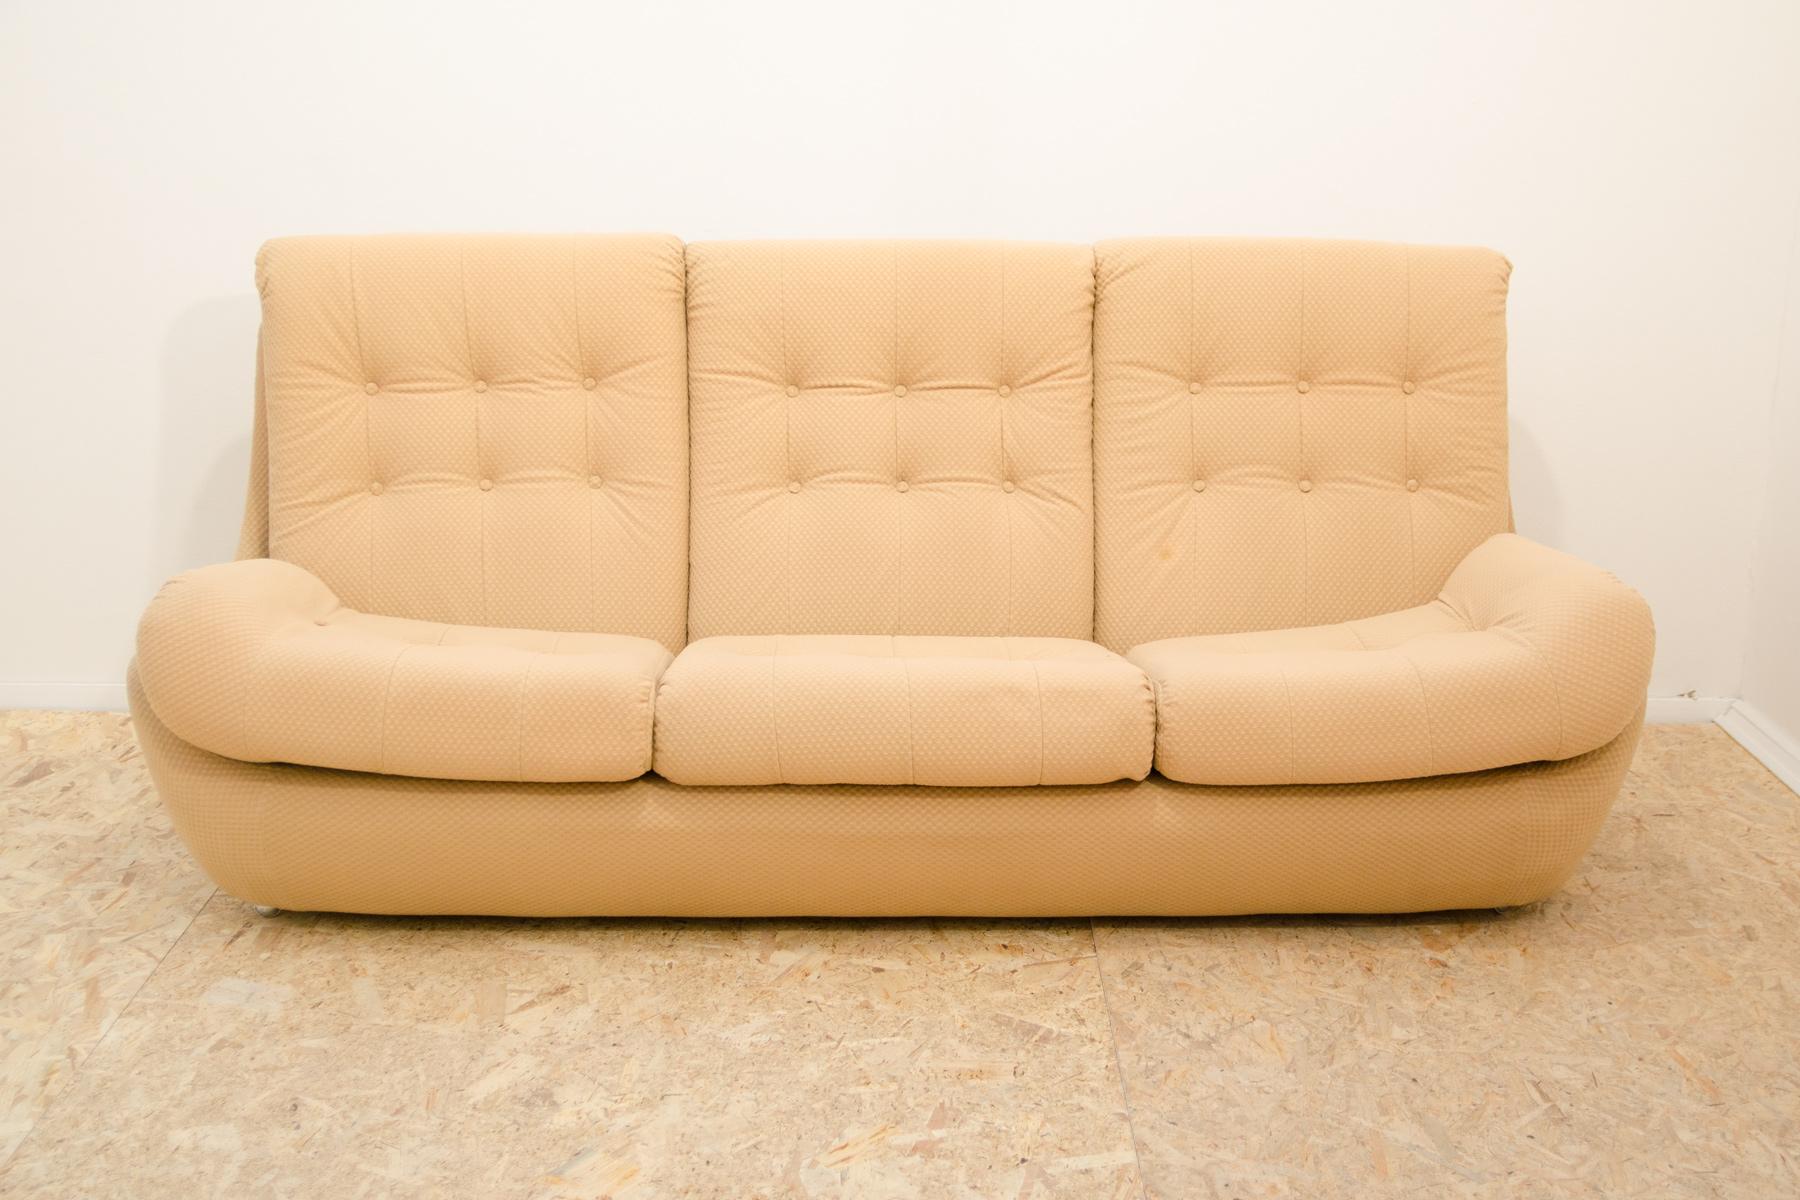 Dieses Vintage-Sofa ist ein typisches Beispiel für das Möbeldesign der 1970/1980er Jahre in der ehemaligen Tschechoslowakei. Sie wurde in den 1970er Jahren von der Firma JITONA hergestellt.

Das Sofa besteht aus einem starken und leichten